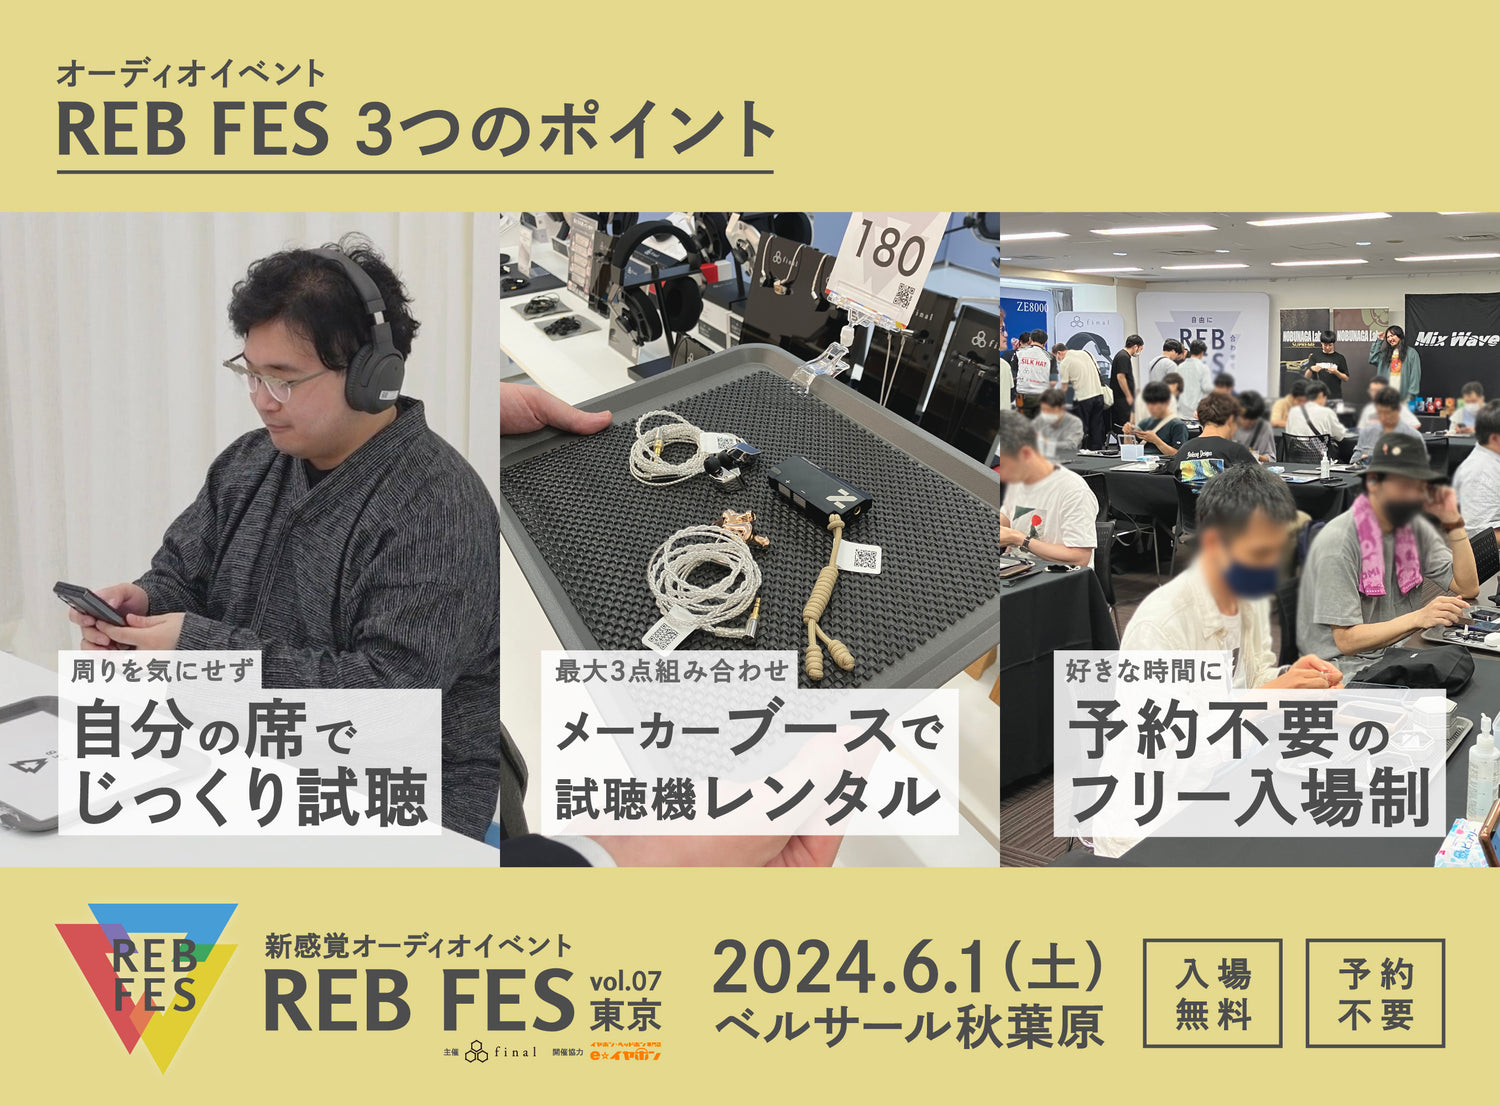 自由に組み合わせて聴けるオーディオイベント「REB fes vol.07@東京」は「試聴機レンタルシステム」導入でフリー入場制がより快適に